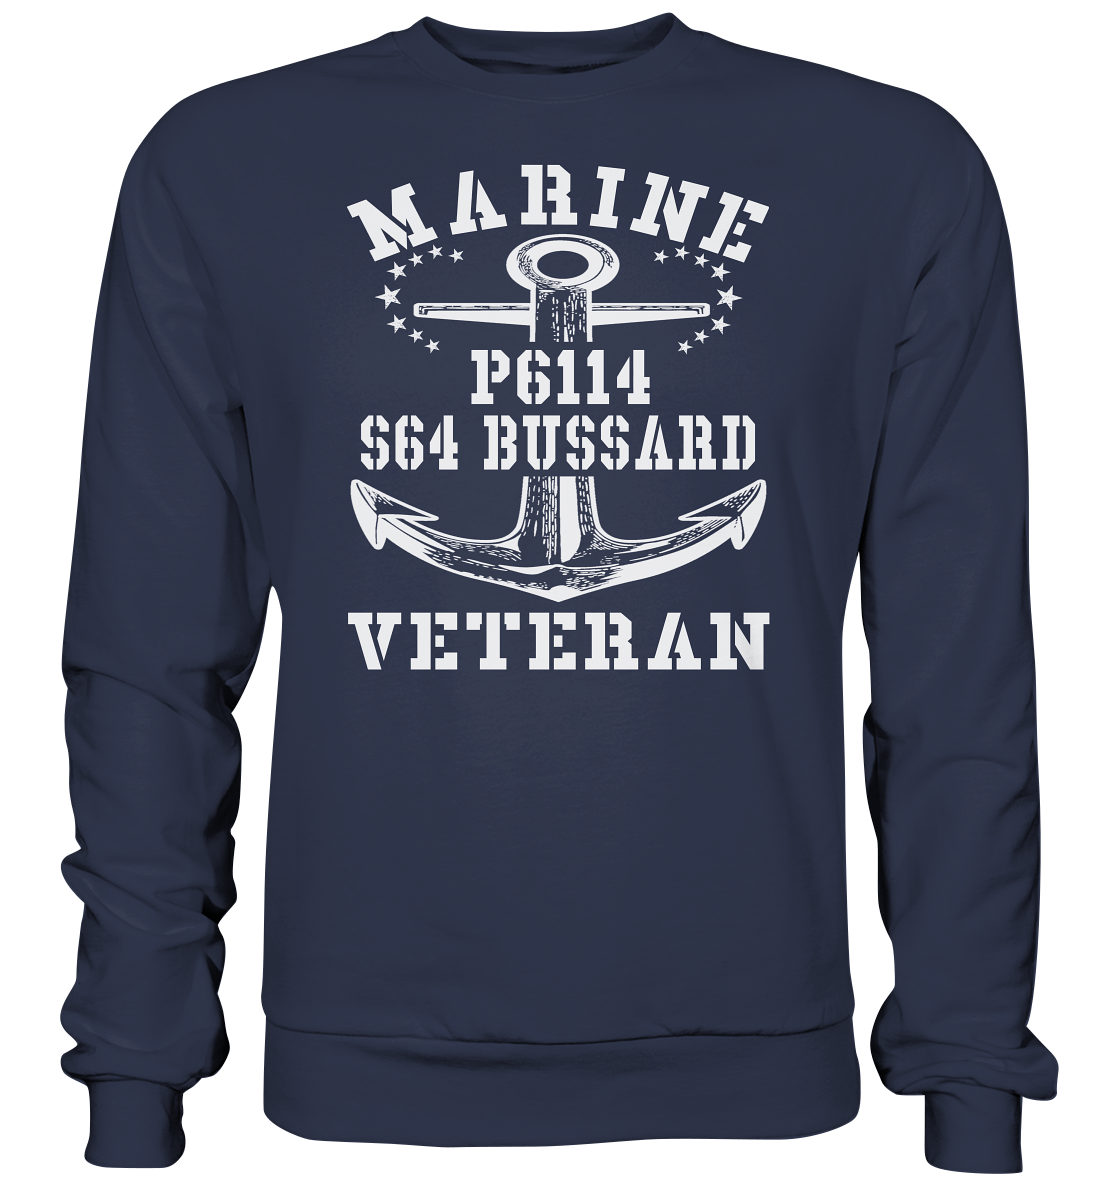 FK-Schnellboot P6114 BUSSARD Marine Veteran - Premium Sweatshirt